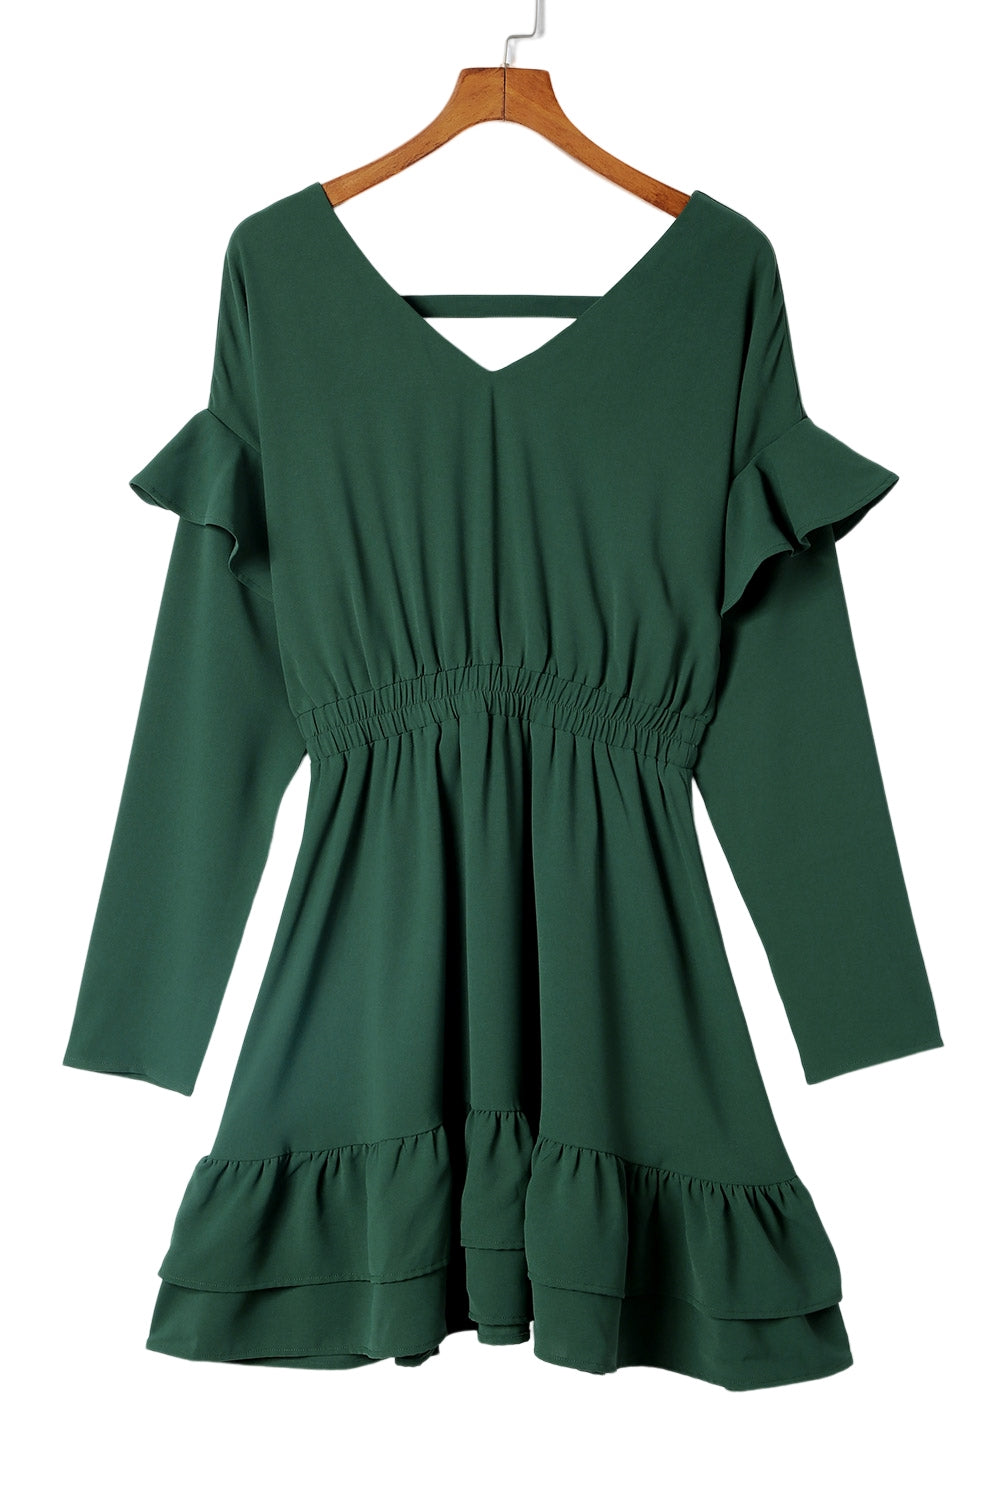 Mini-robe taille haute à volants et col en V de couleur unie verte